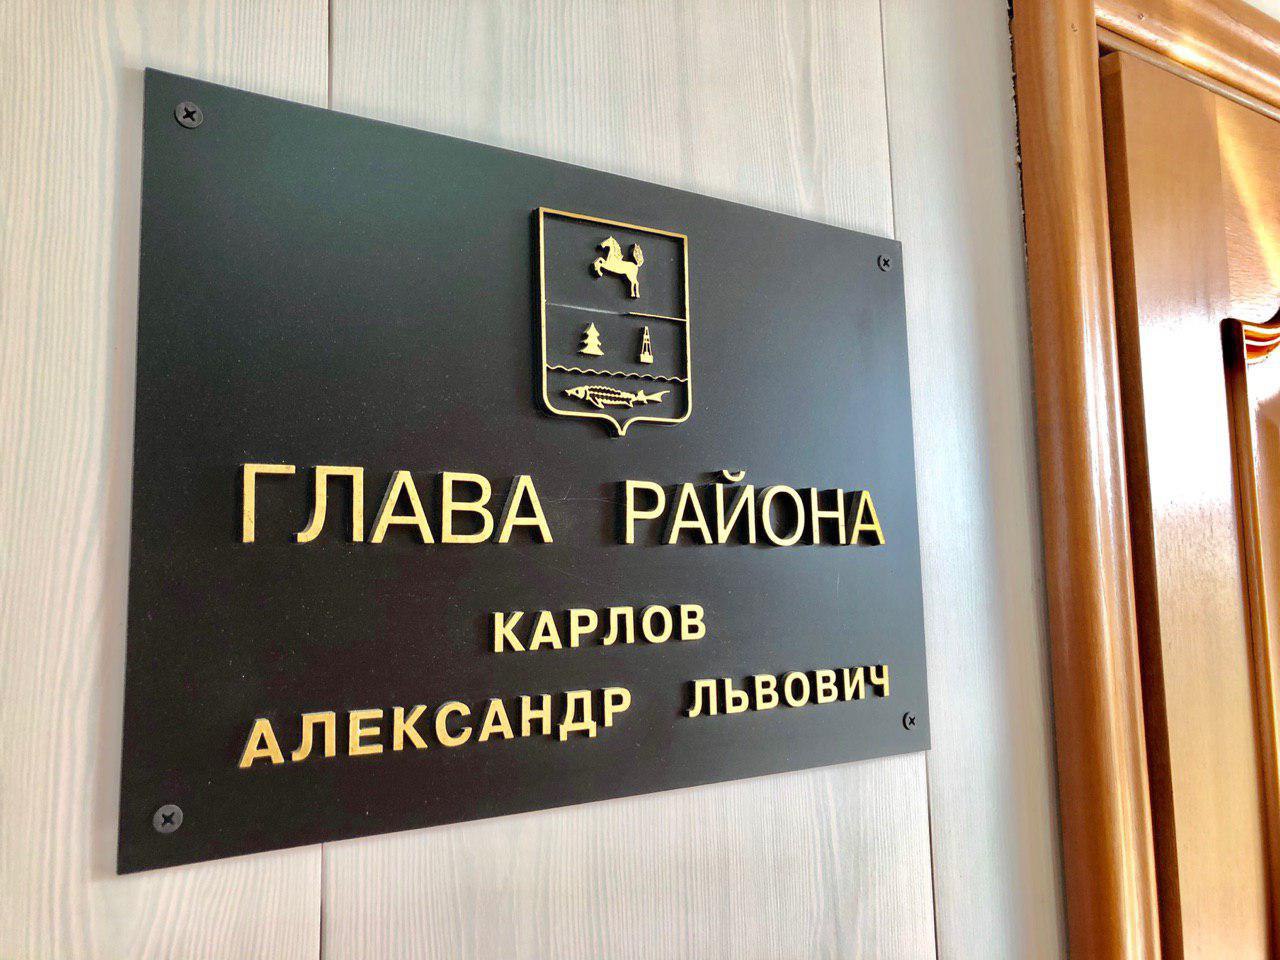 Сегодня в администрации района прошло очередное аппаратное совещание под руководством главы Александра Карлова.